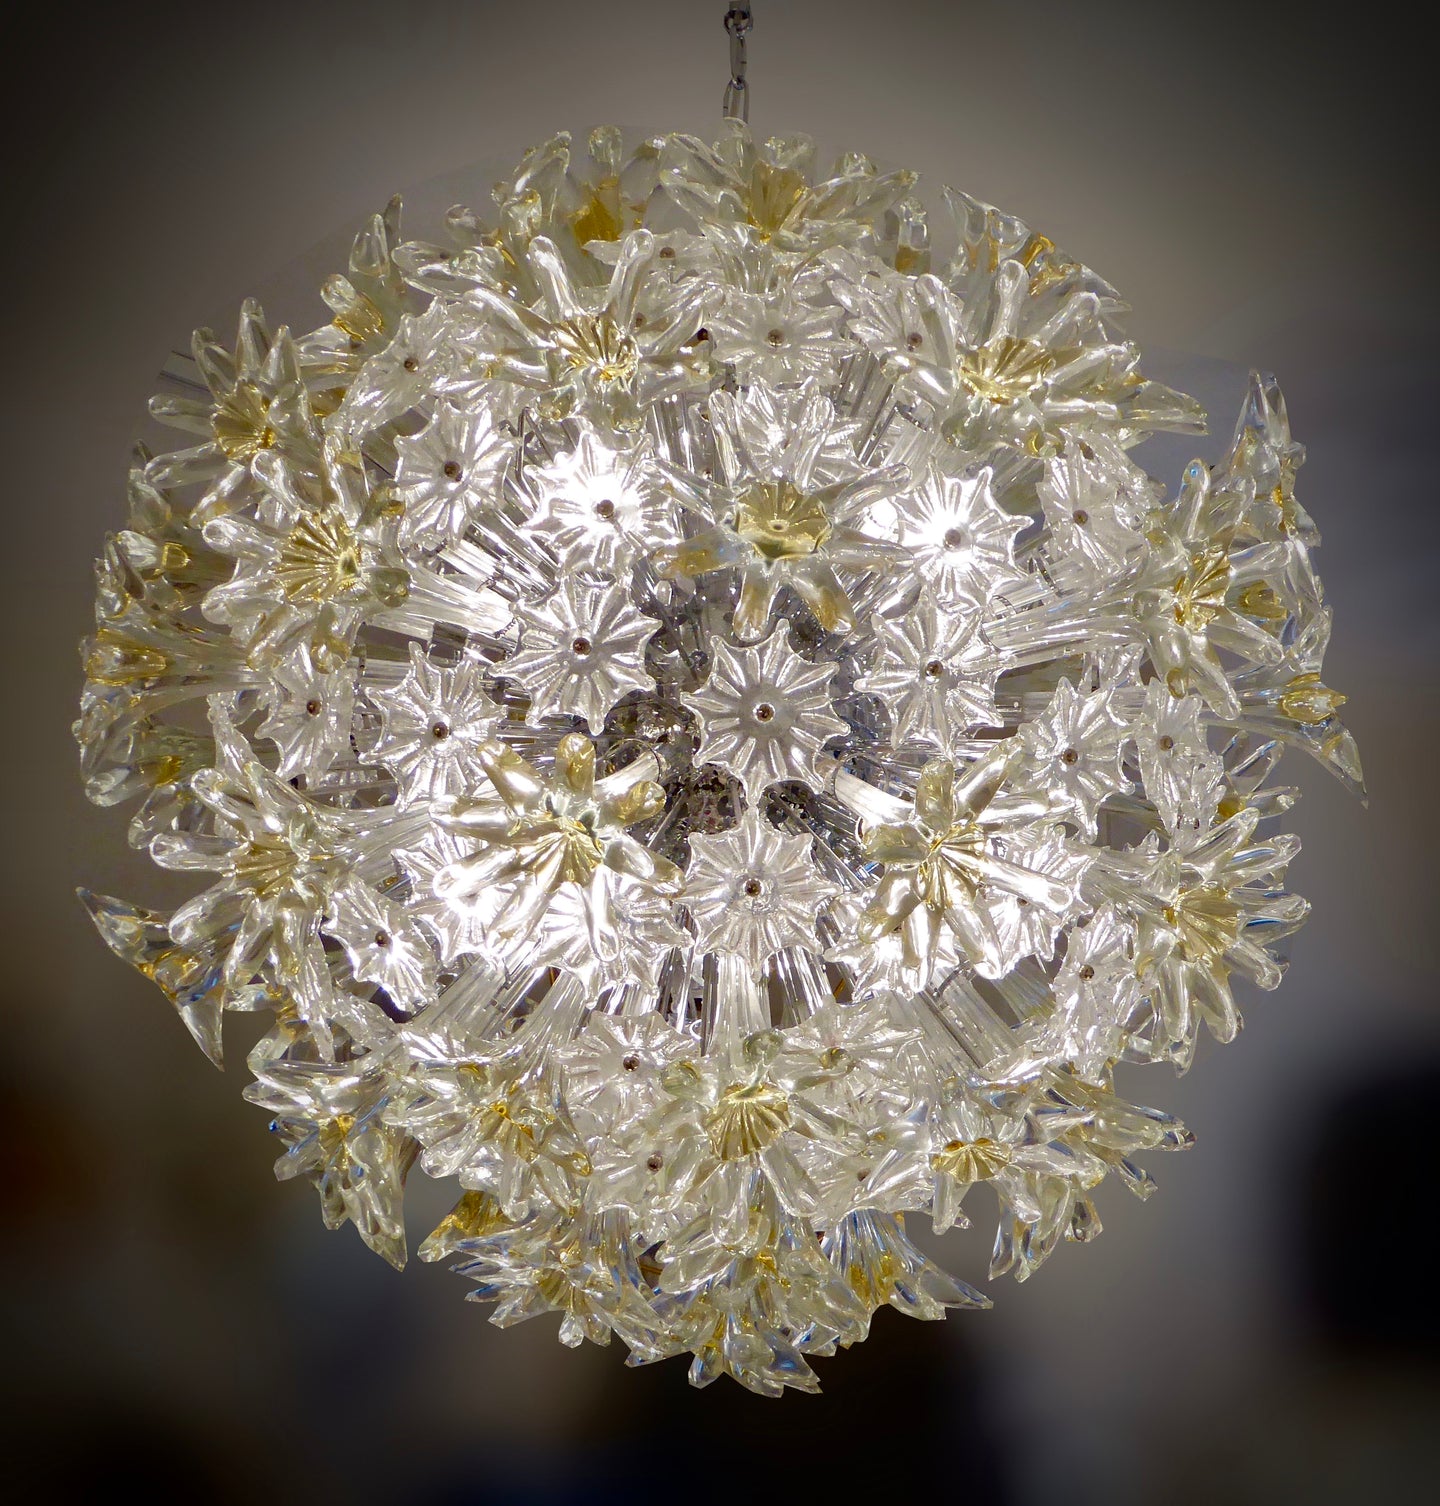 Venetian “Esprit” glass chandelier